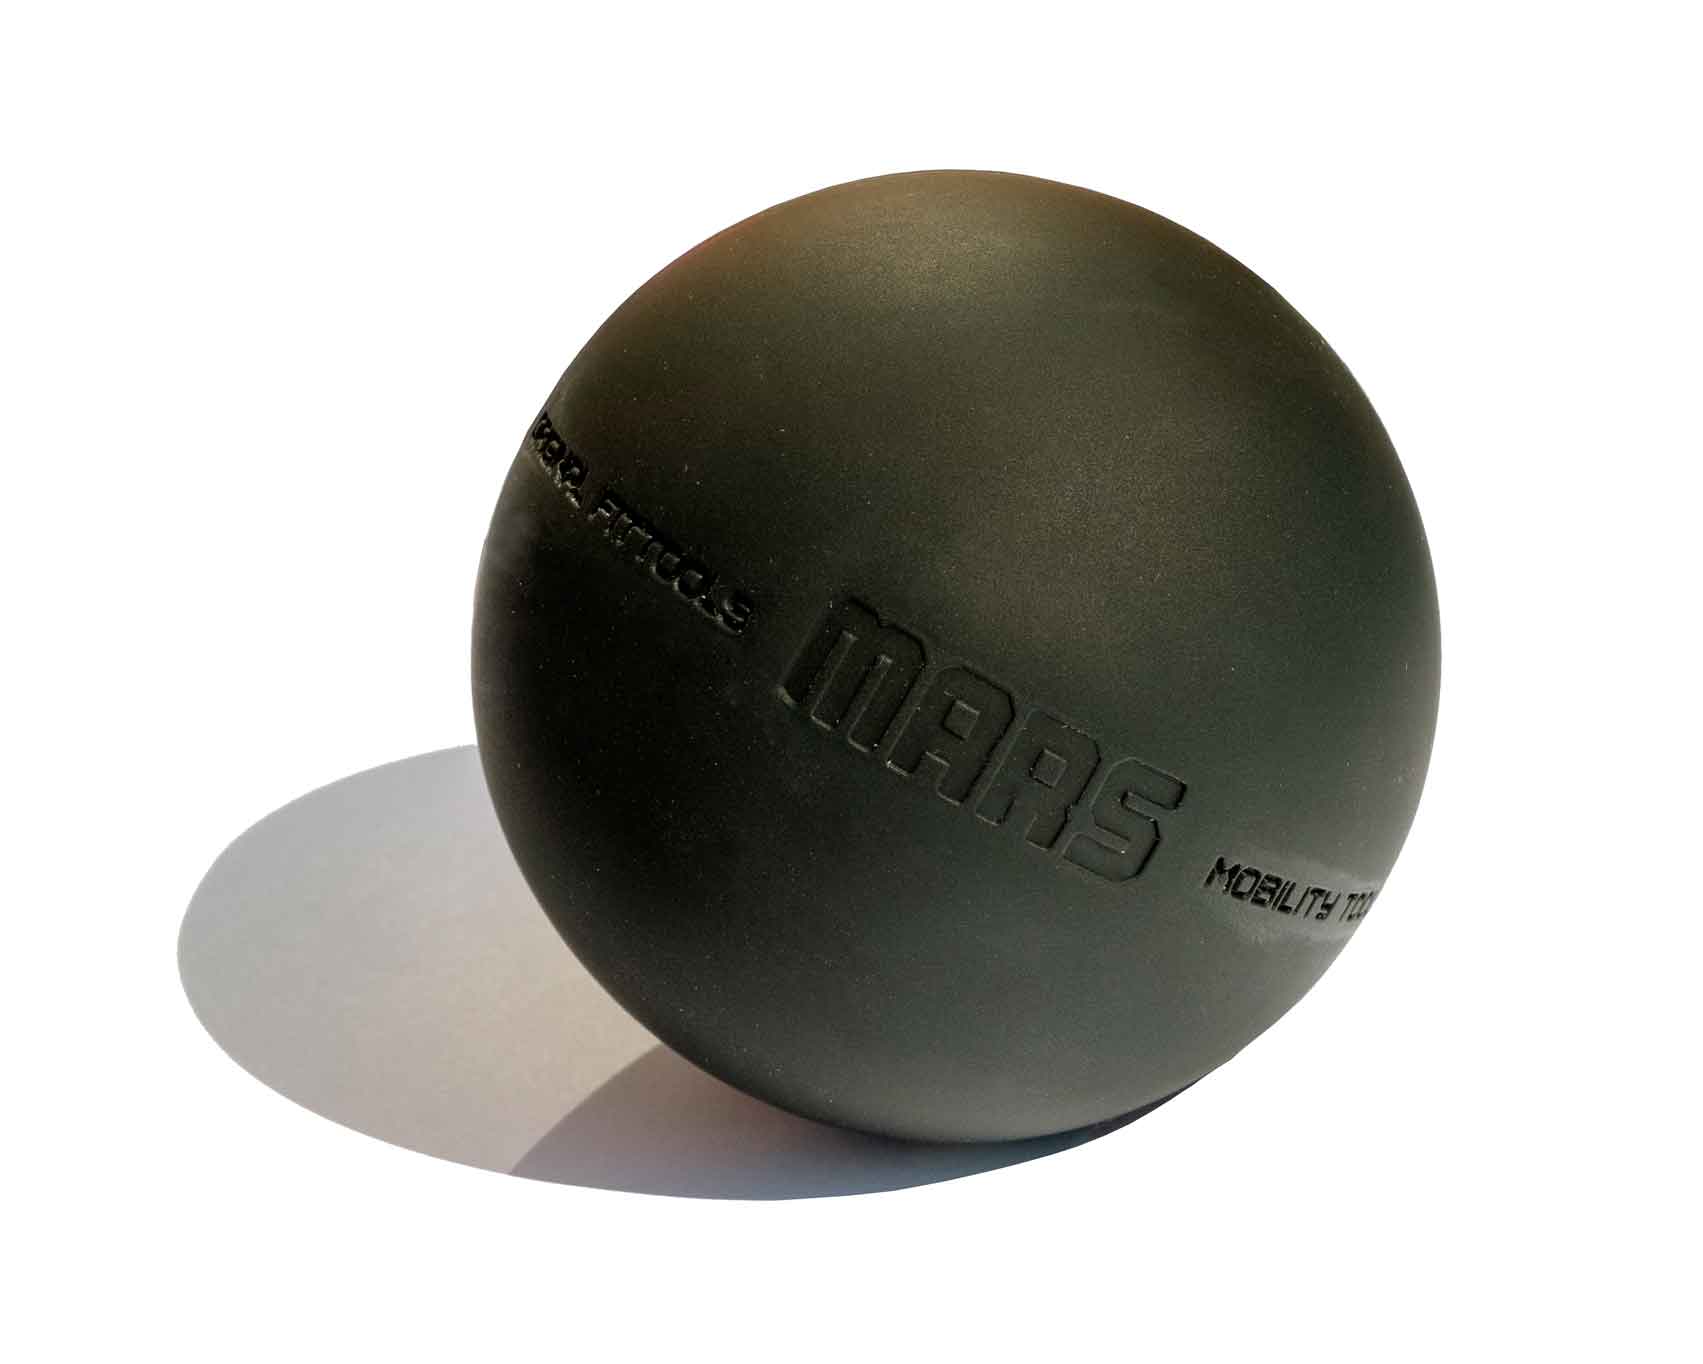 Original FitTools Мяч для МФР 9 см одинарный черный Original FitTools FT-MARS-BLACK